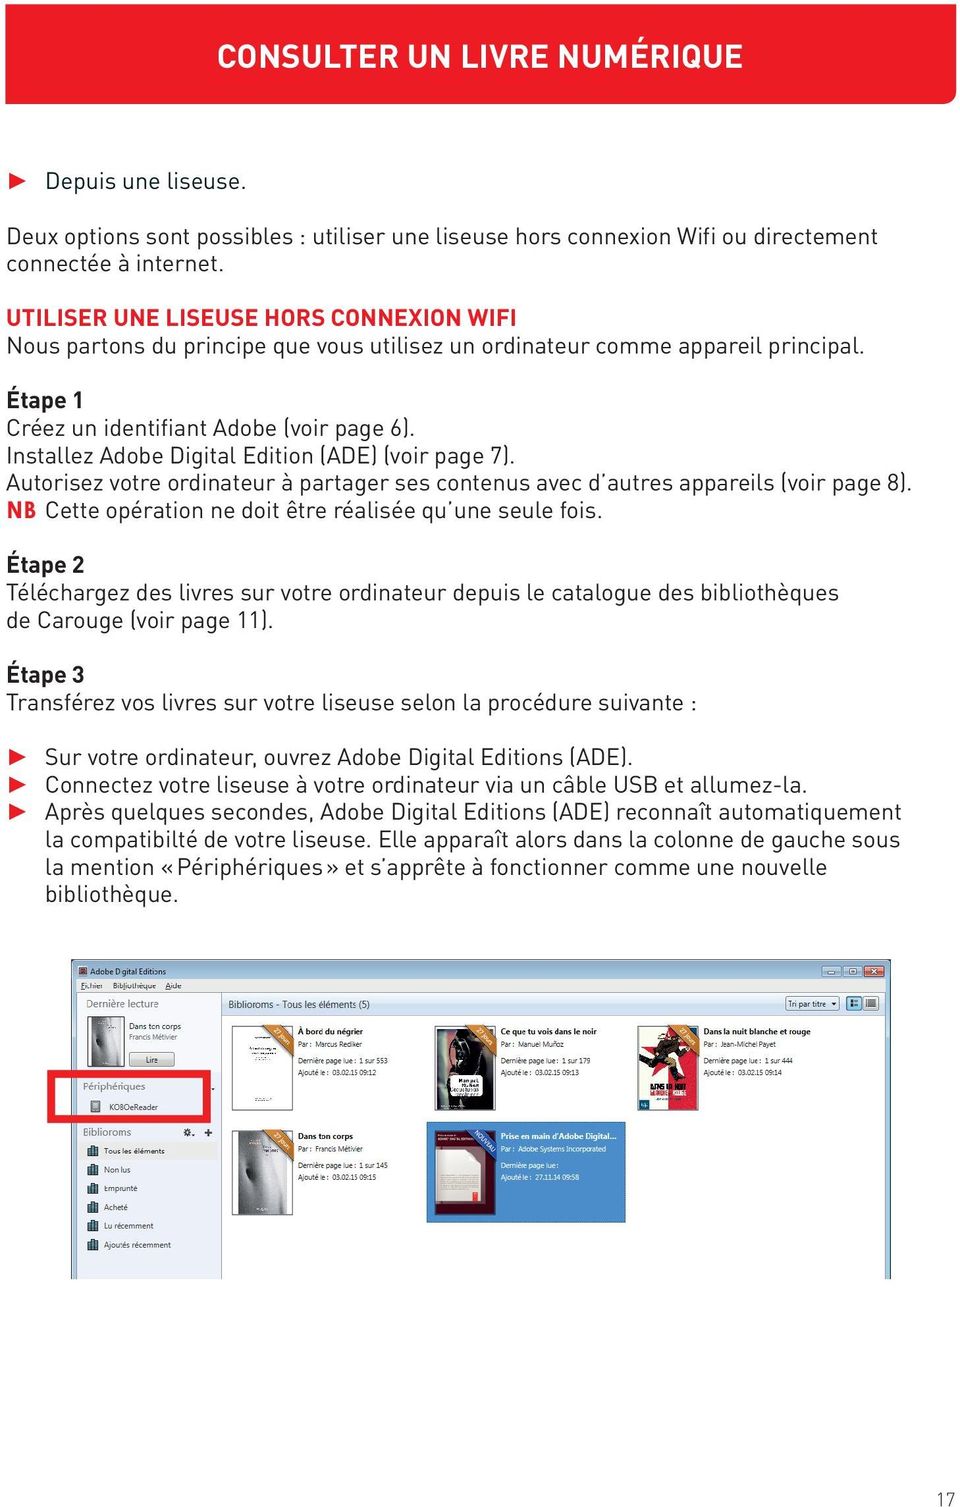 Installez Adobe Digital Edition (ADE) (voir page 7). Autorisez votre ordinateur à partager ses contenus avec d autres appareils (voir page 8).